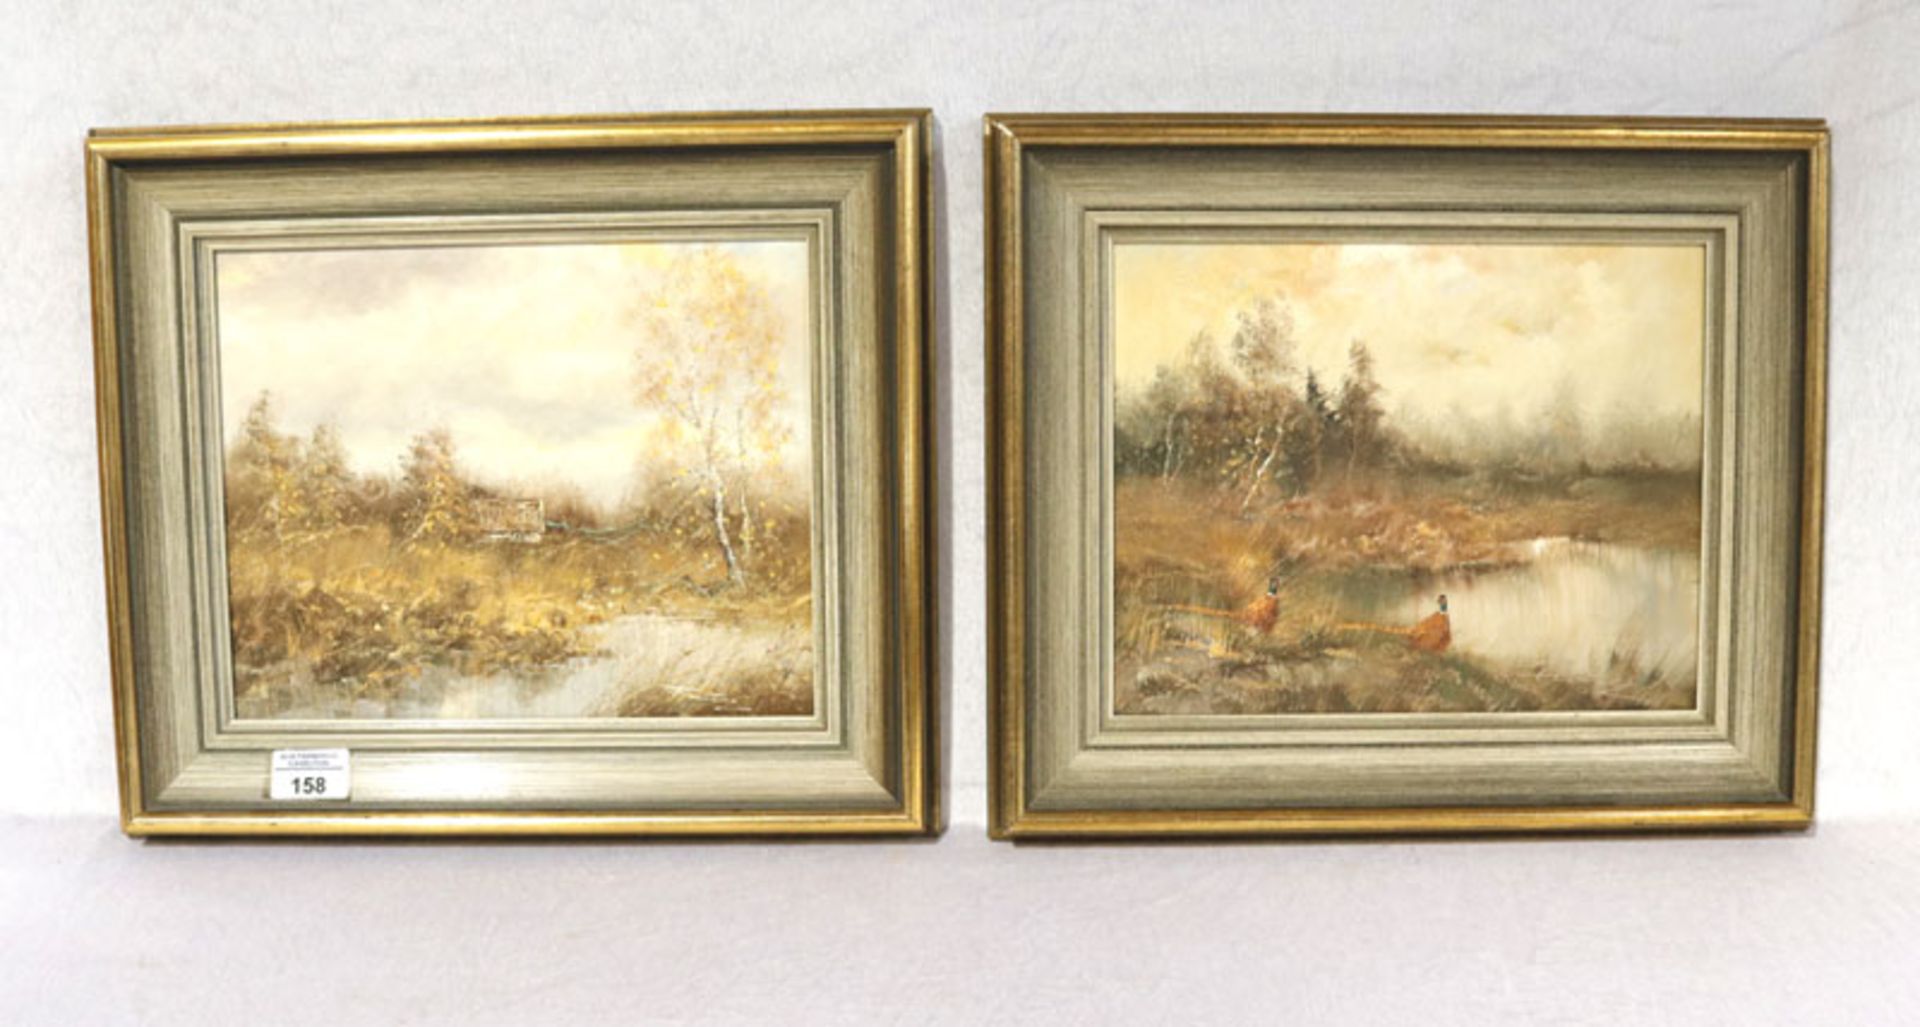 2 Gemälde ÖL/LW 'Fasane im Moor' und 'Moorlandschaft', undeutlich signiert, gerahmt, Rahmen